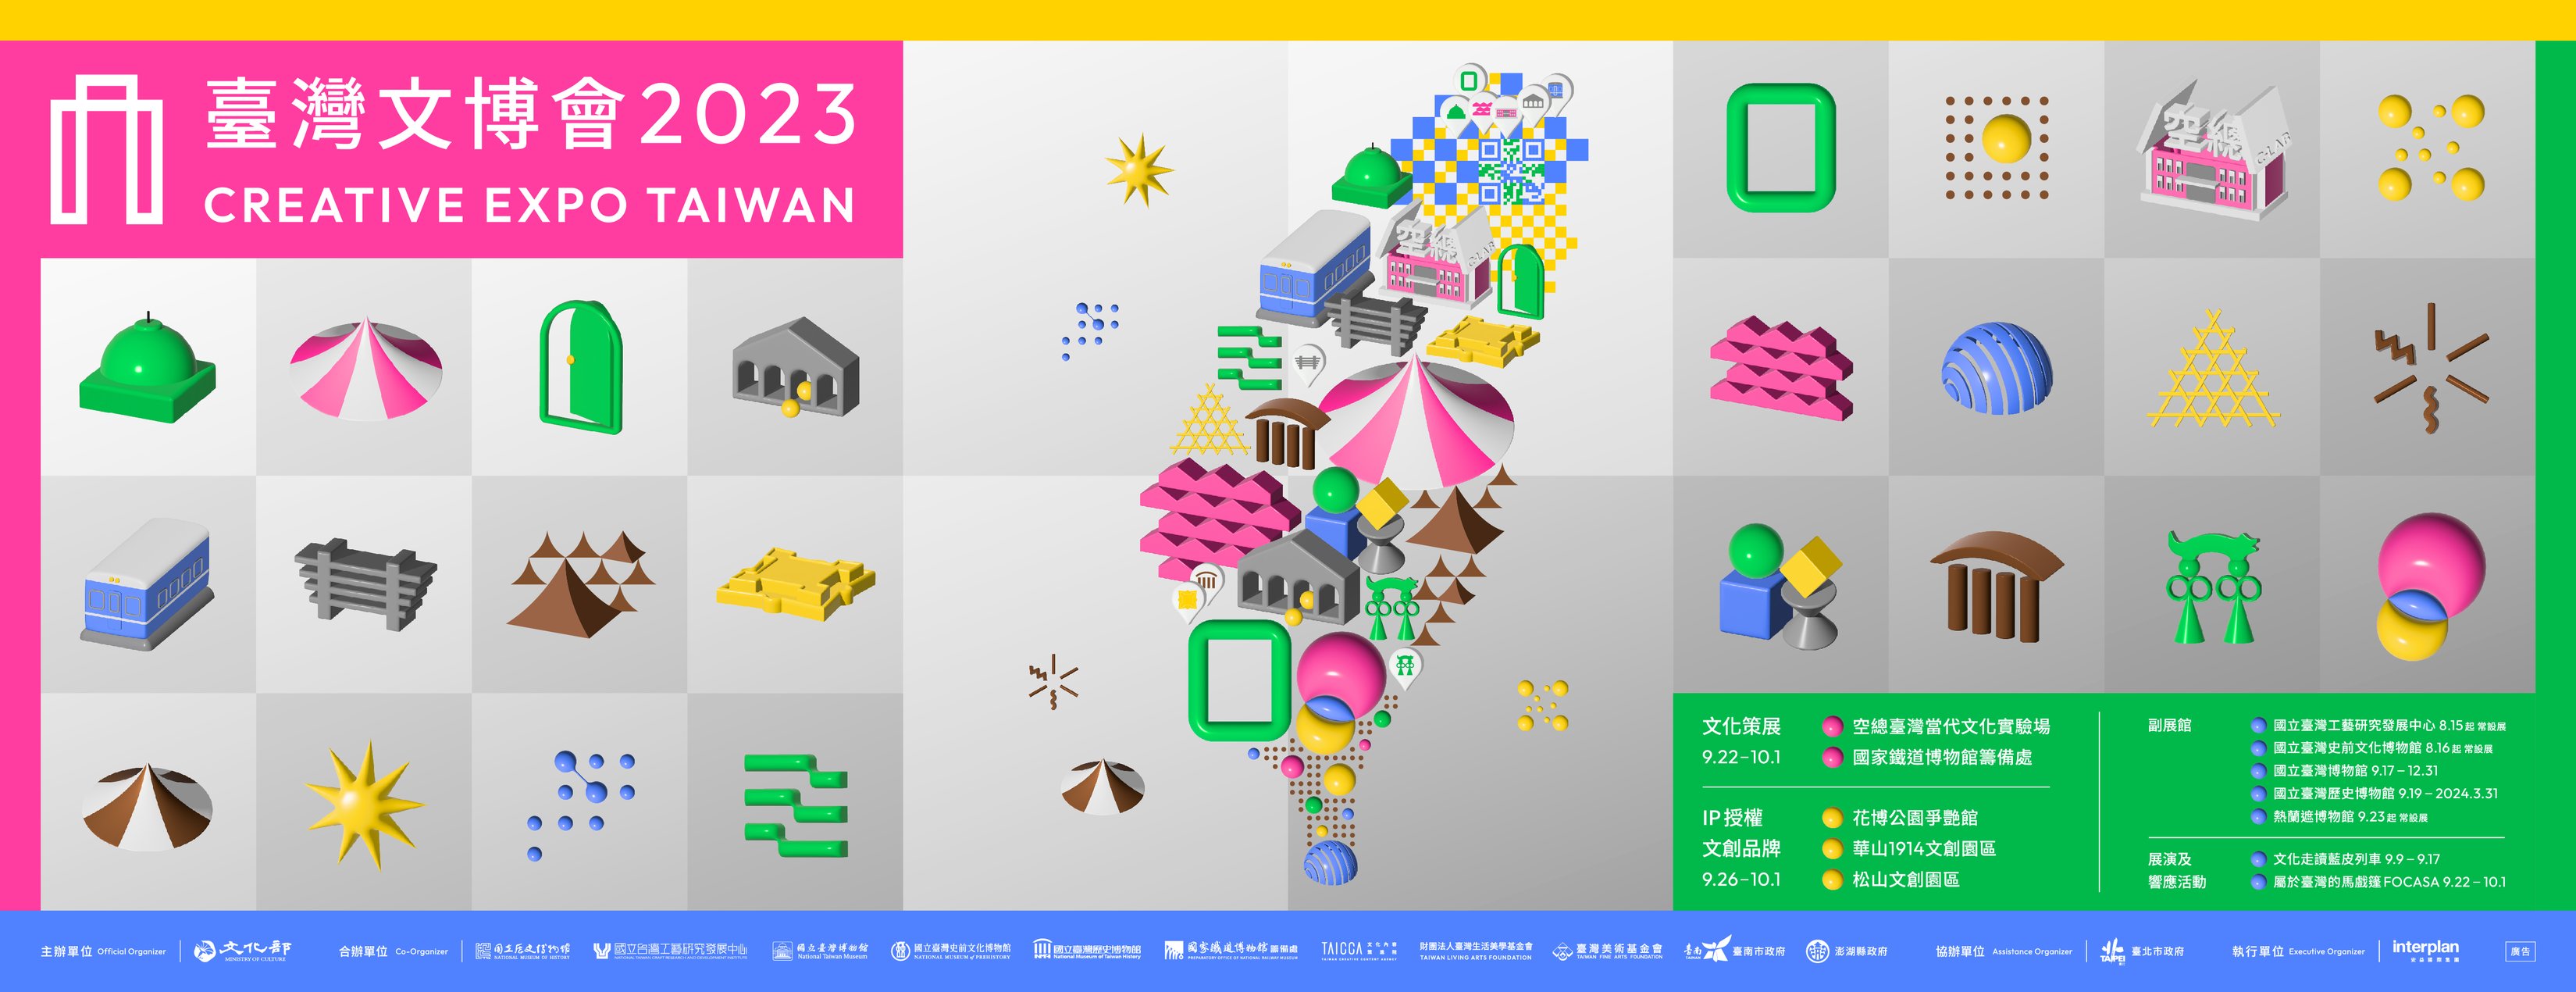 “มหกรรม Creative Expo Taiwan 2023” จะจัดขึ้นที่ไทเปในวันที่ 22 กันยายน  ภาพ／จากเฟซบุ๊ก台灣文博會